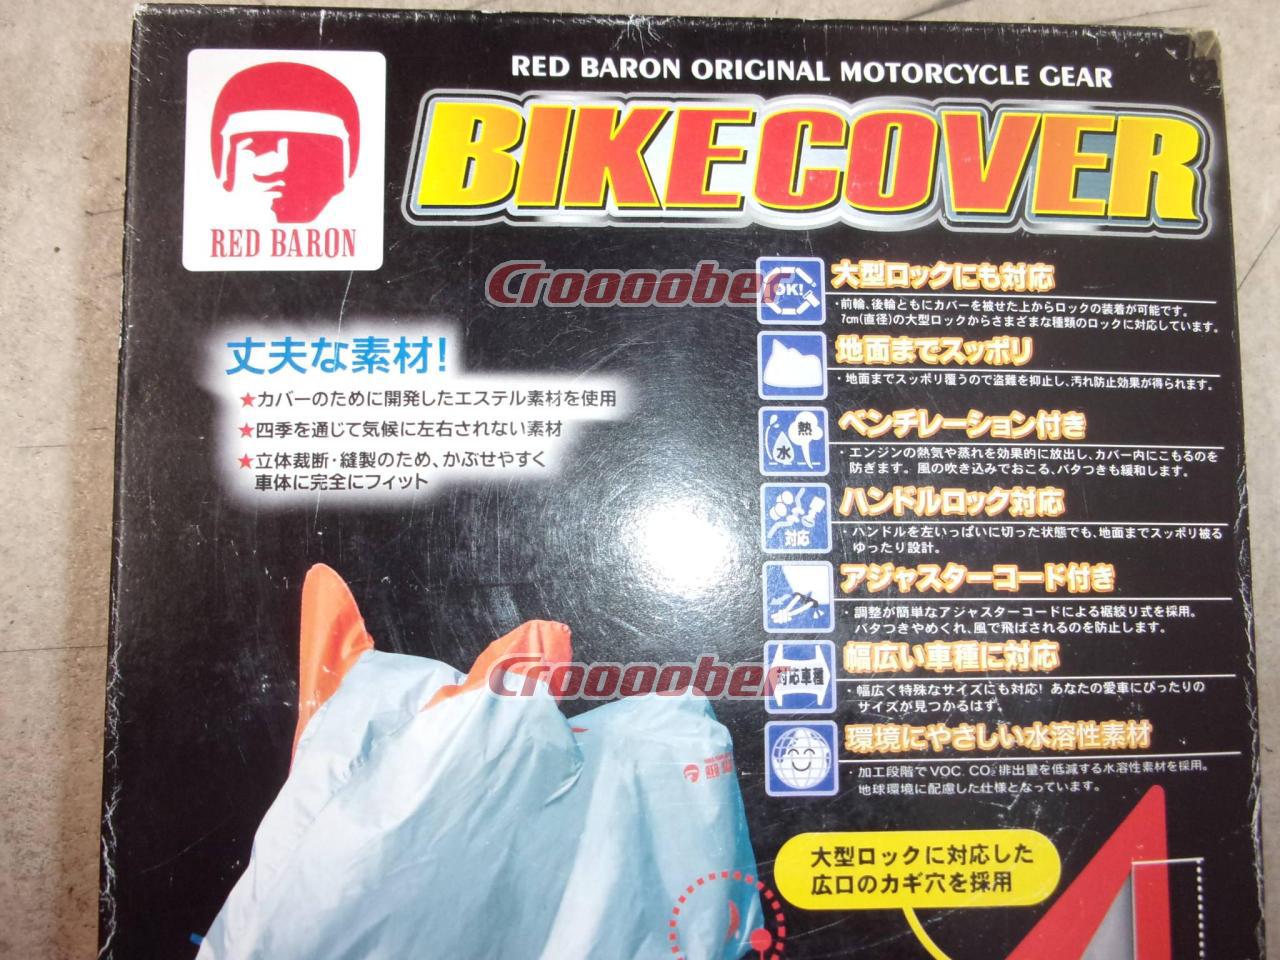 日本代理店正規品 新品 レッドバロン バイクカバー ビッグアメリカン 